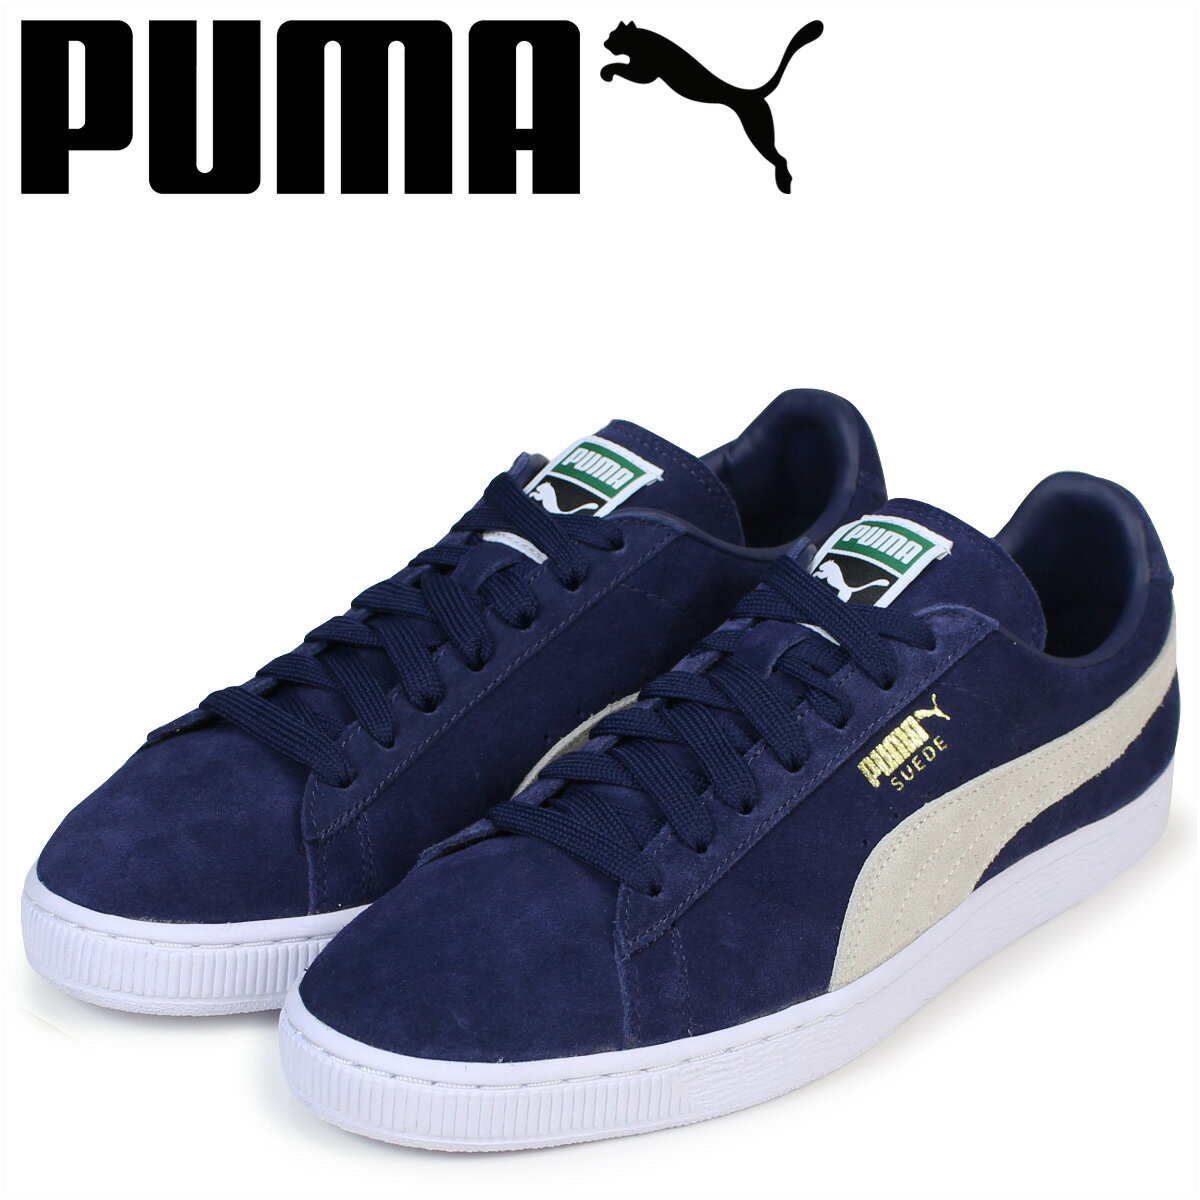 puma dark blue shoes